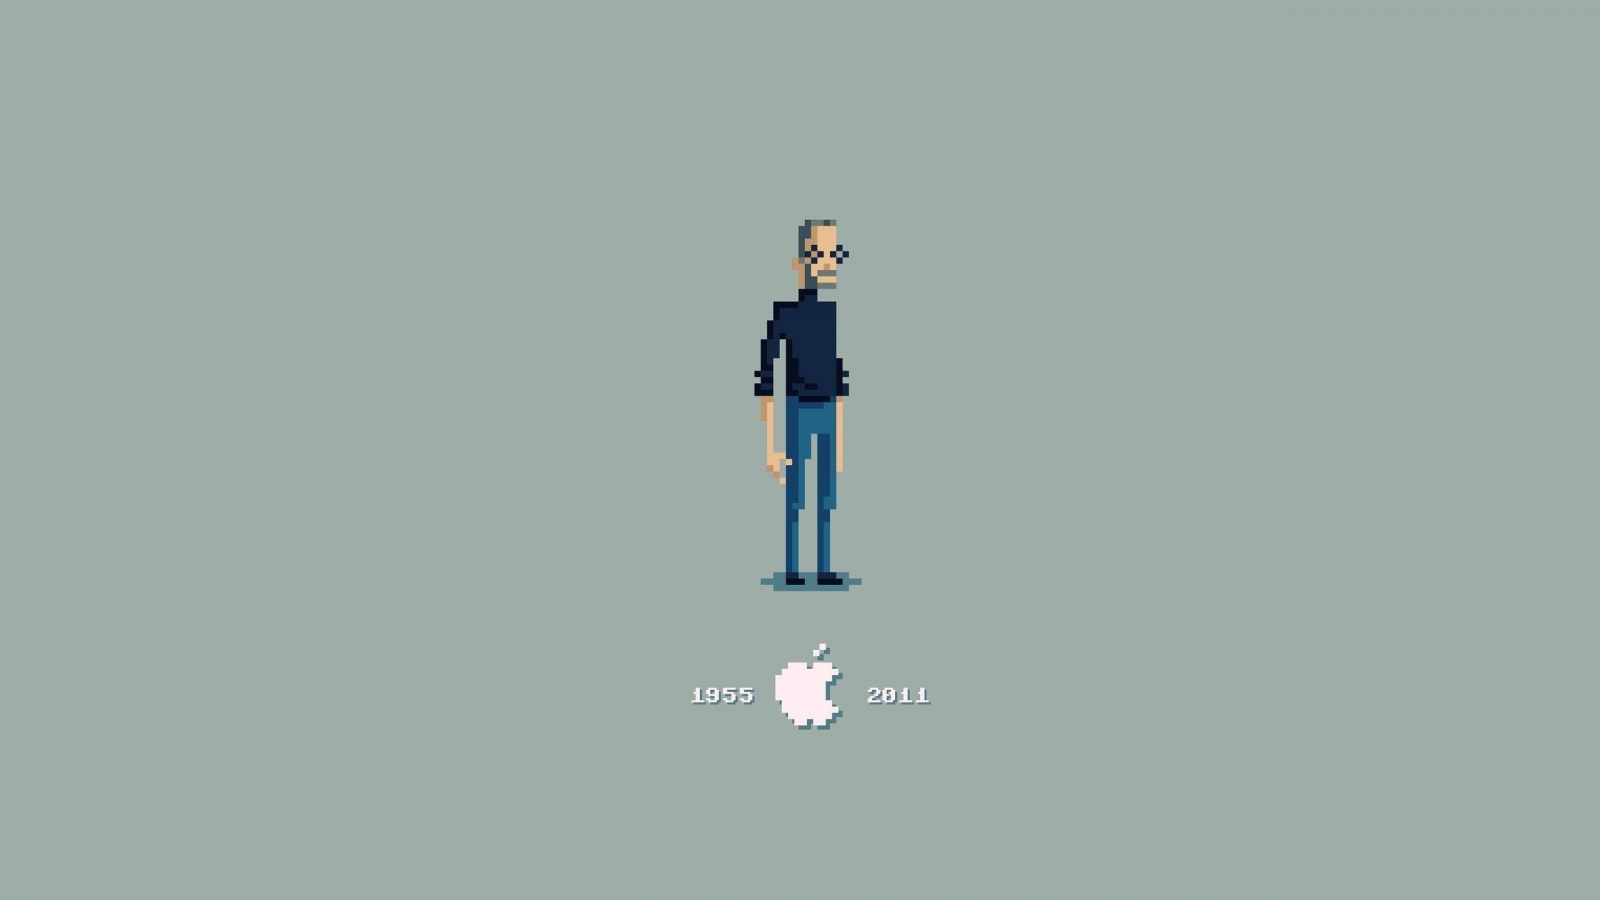 Steve Jobs Pixelated for 1600 x 900 HDTV resolution